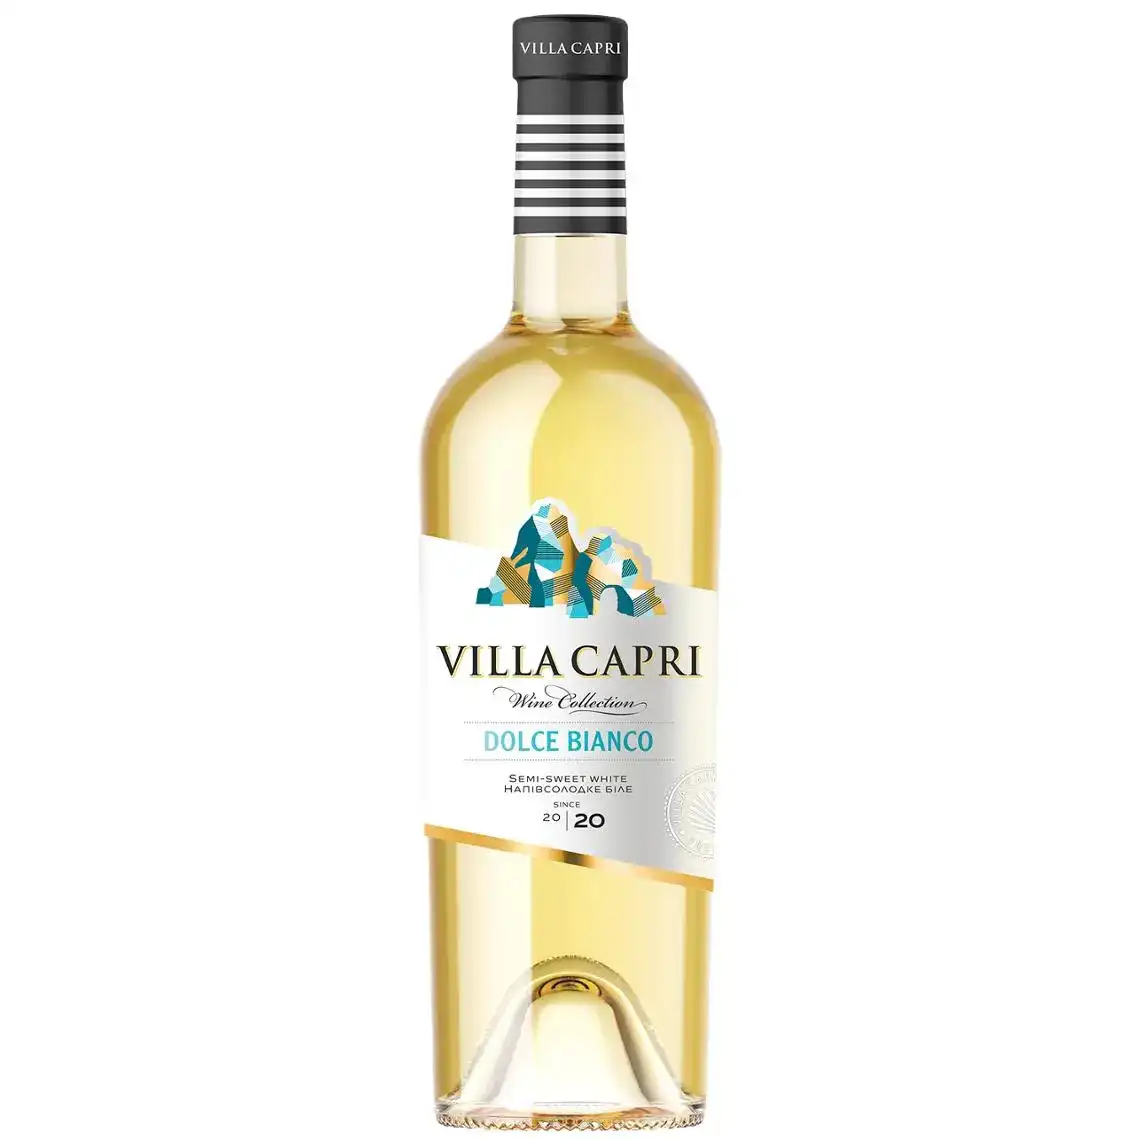 Вино Villa Capri Dolce Вianco біле напівсолодке 9-13%  0,75 л